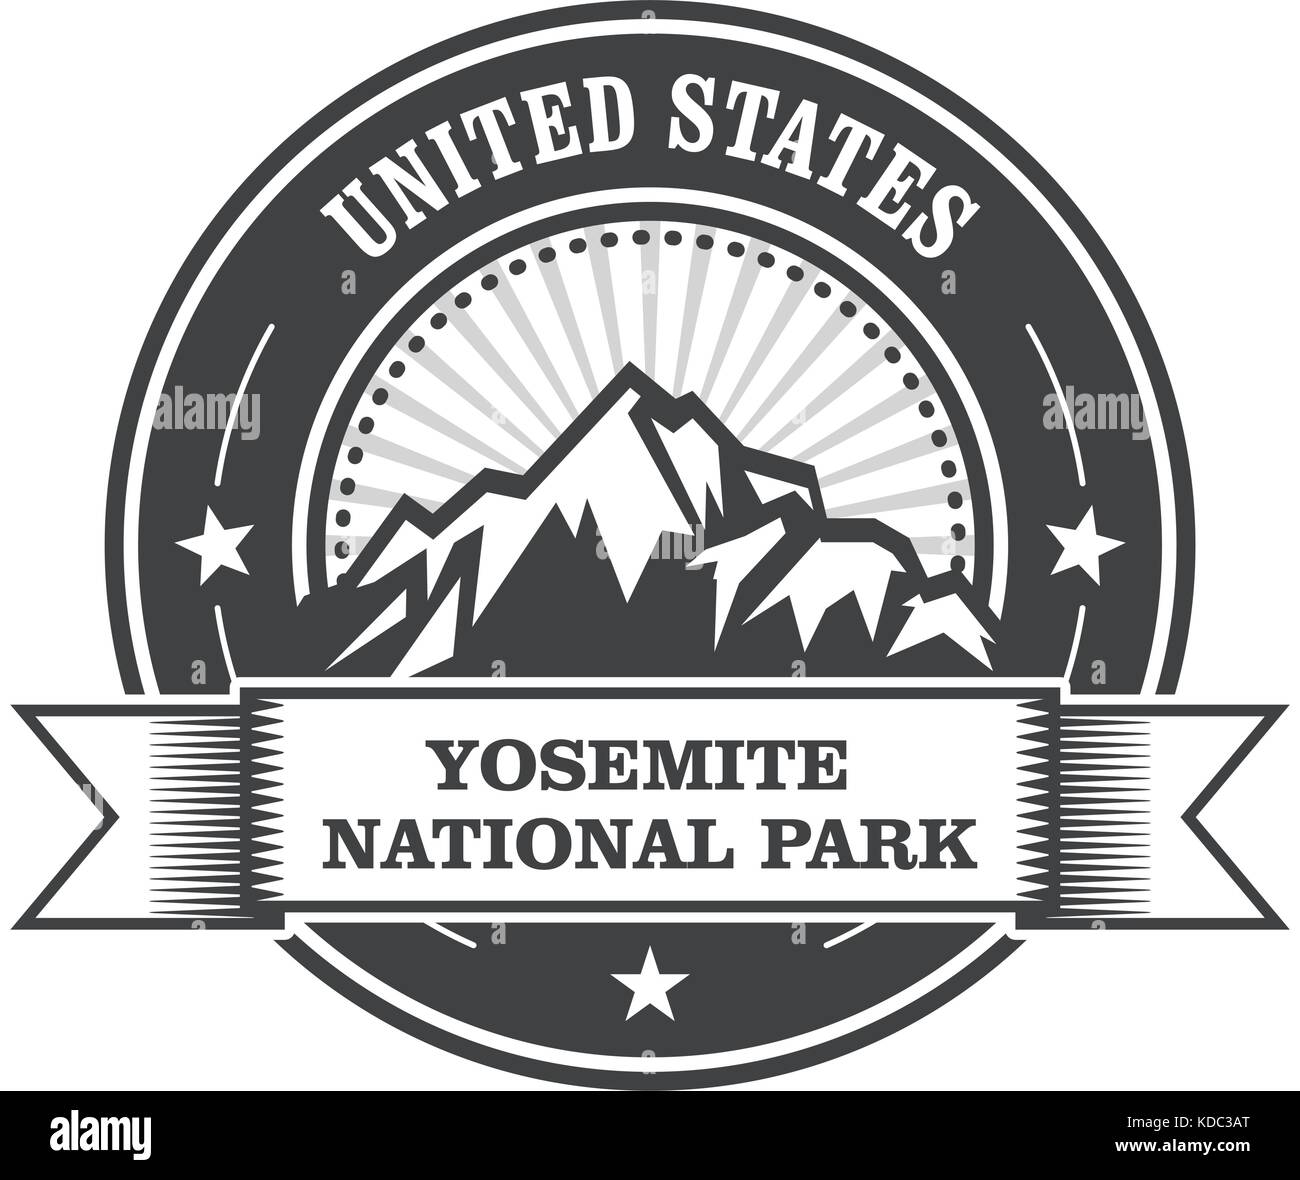 Yosemite National Park Round stamp avec montagnes Illustration de Vecteur